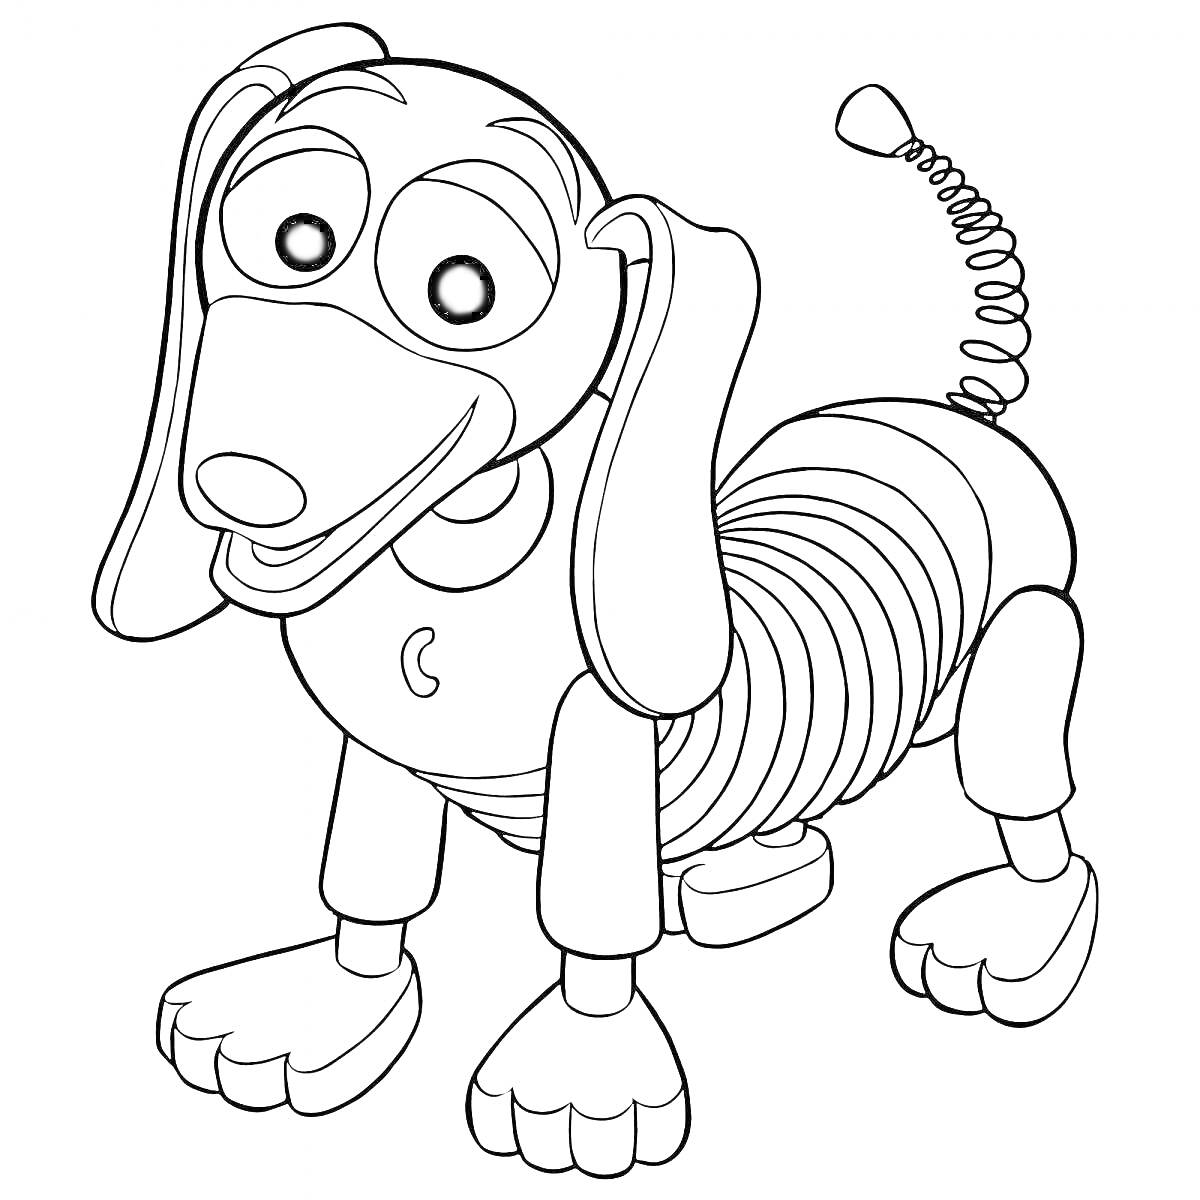 Раскраска Собака-игрушка с пружиной в виде шпиц-терьера с большими глазами и закручивающимся хвостом